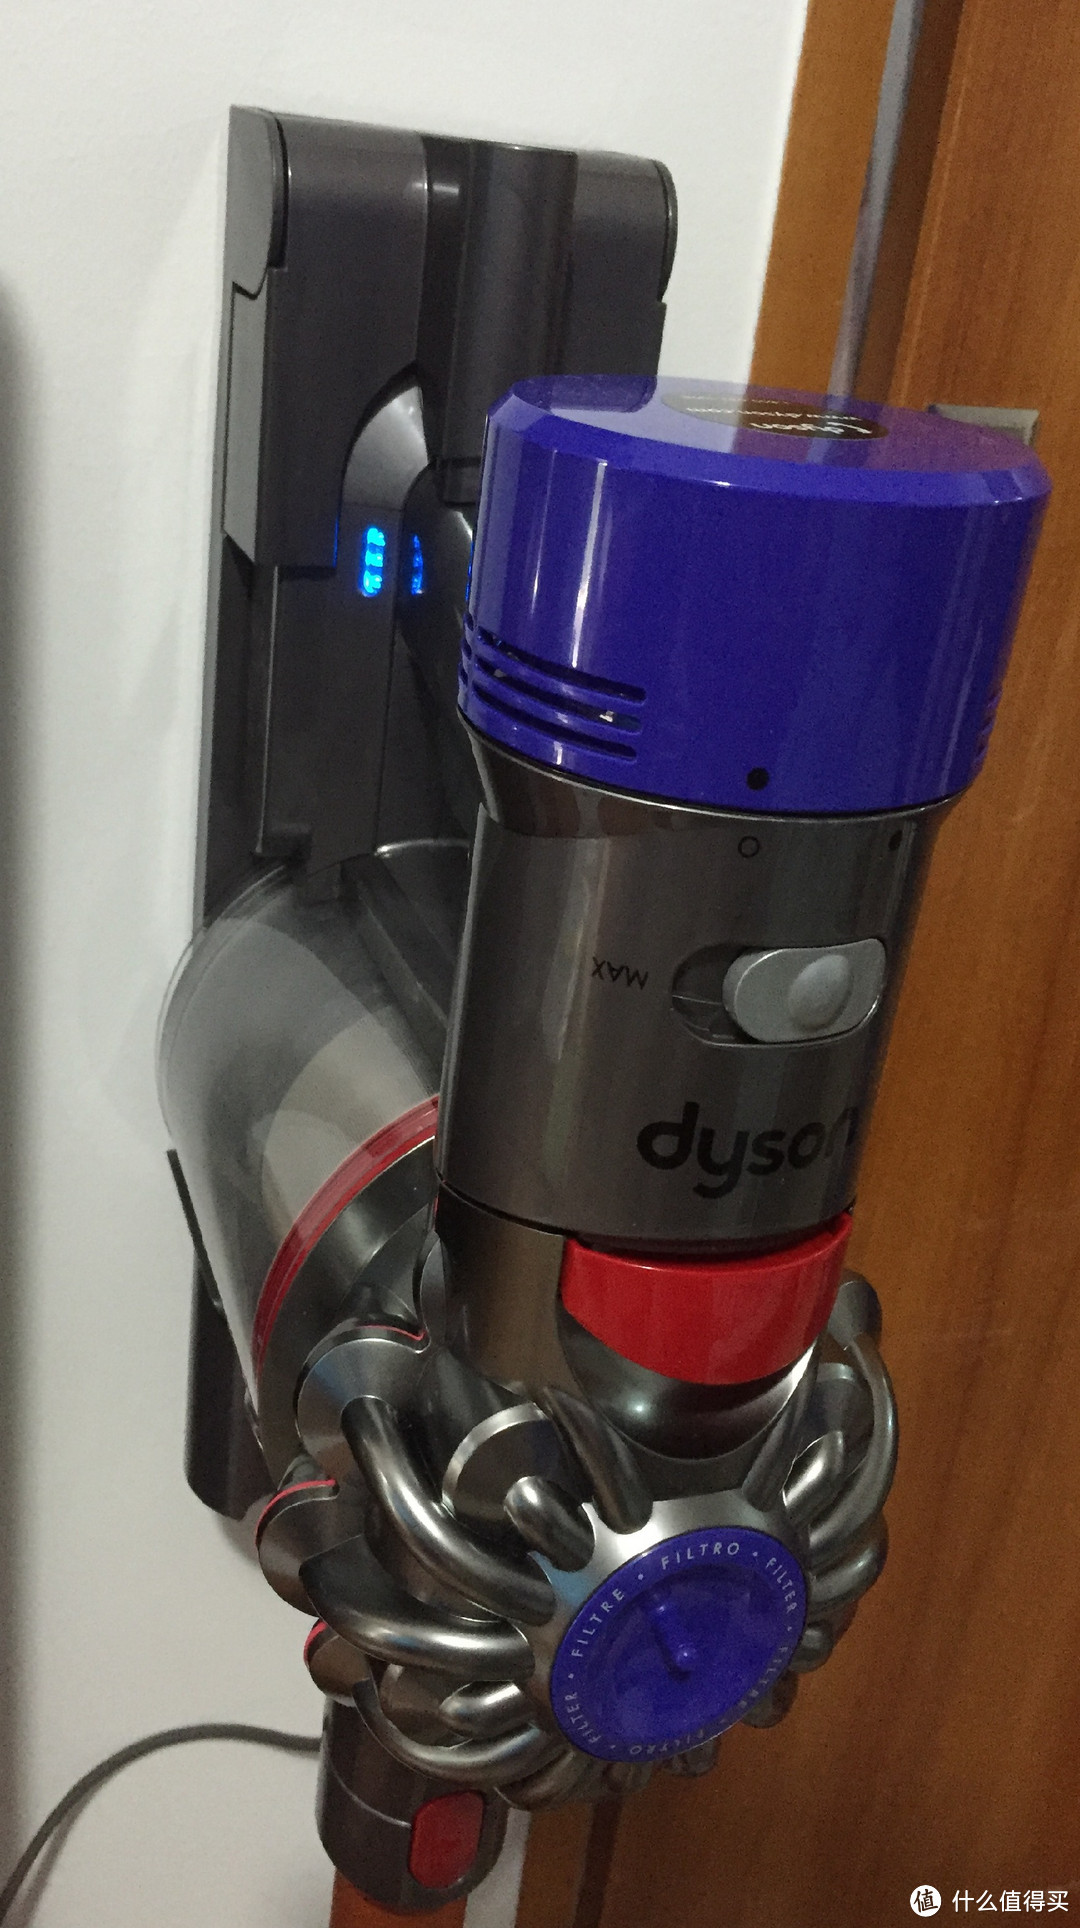 家庭清洁黑科技 —— Dyson 戴森 V8 手持吸尘器 购买及开箱